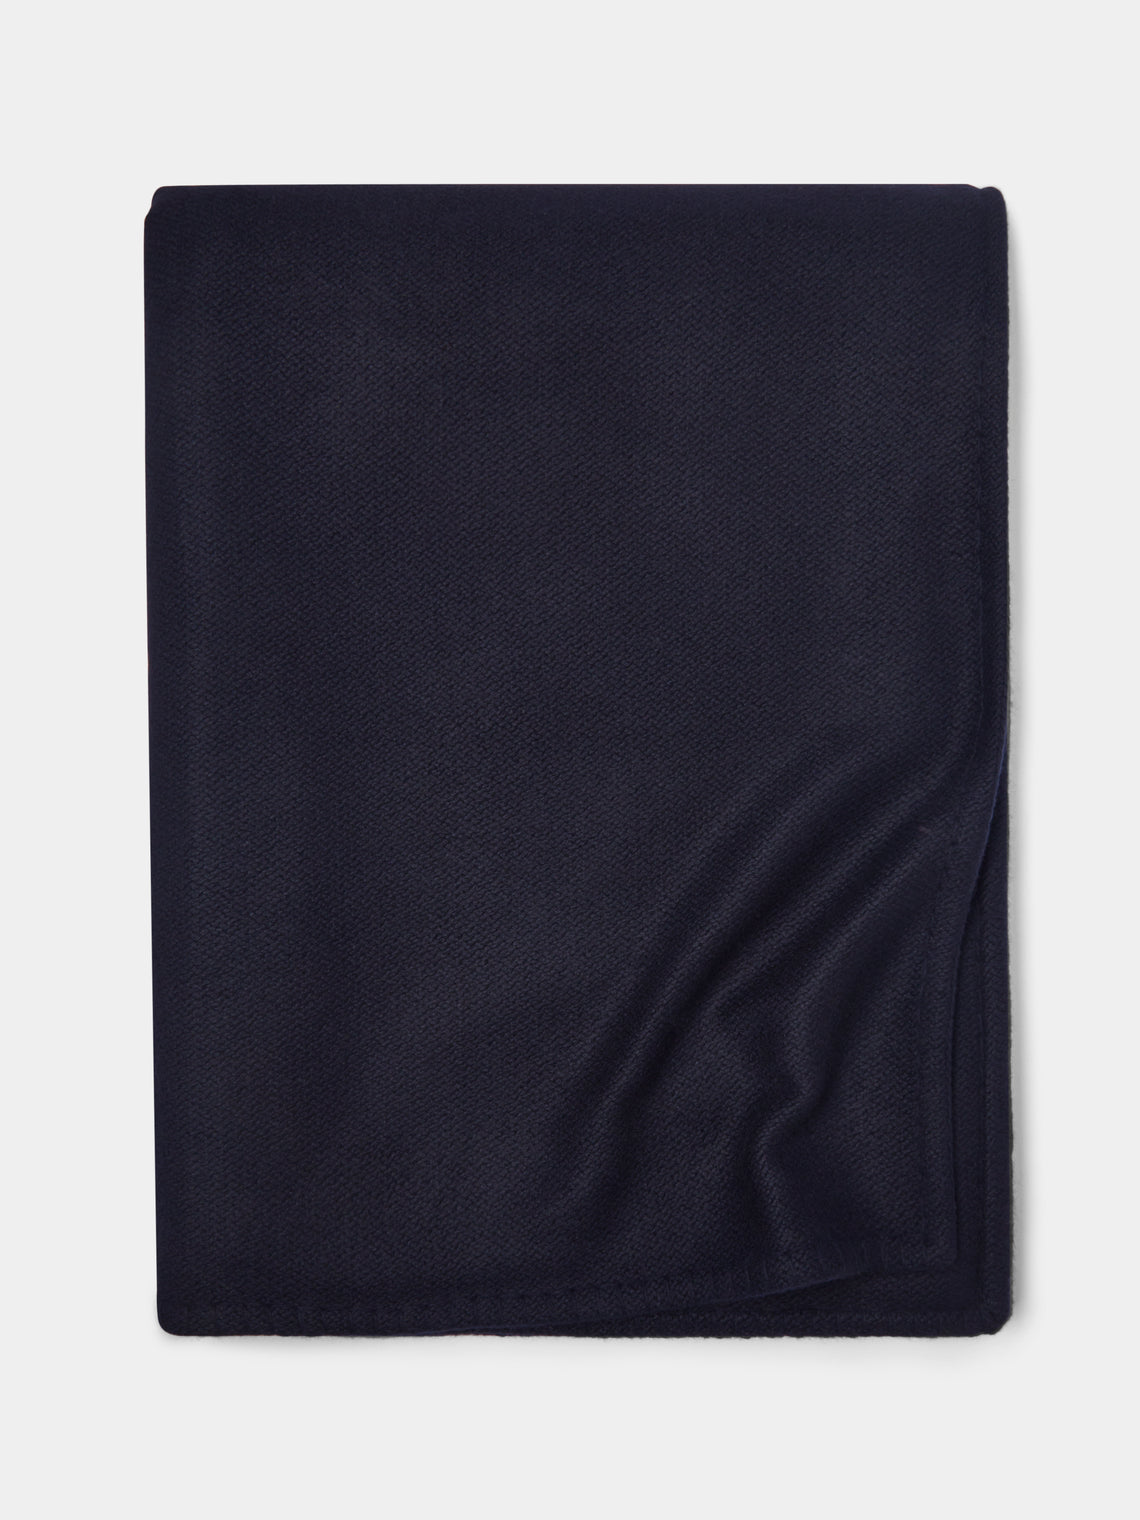 Rose Uniacke - Hand-Dyed Cashmere Large Blanket - Blue - ABASK - 